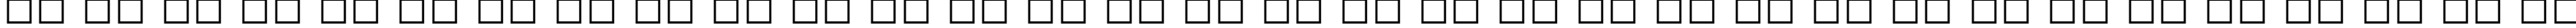 Пример написания русского алфавита шрифтом Adorable